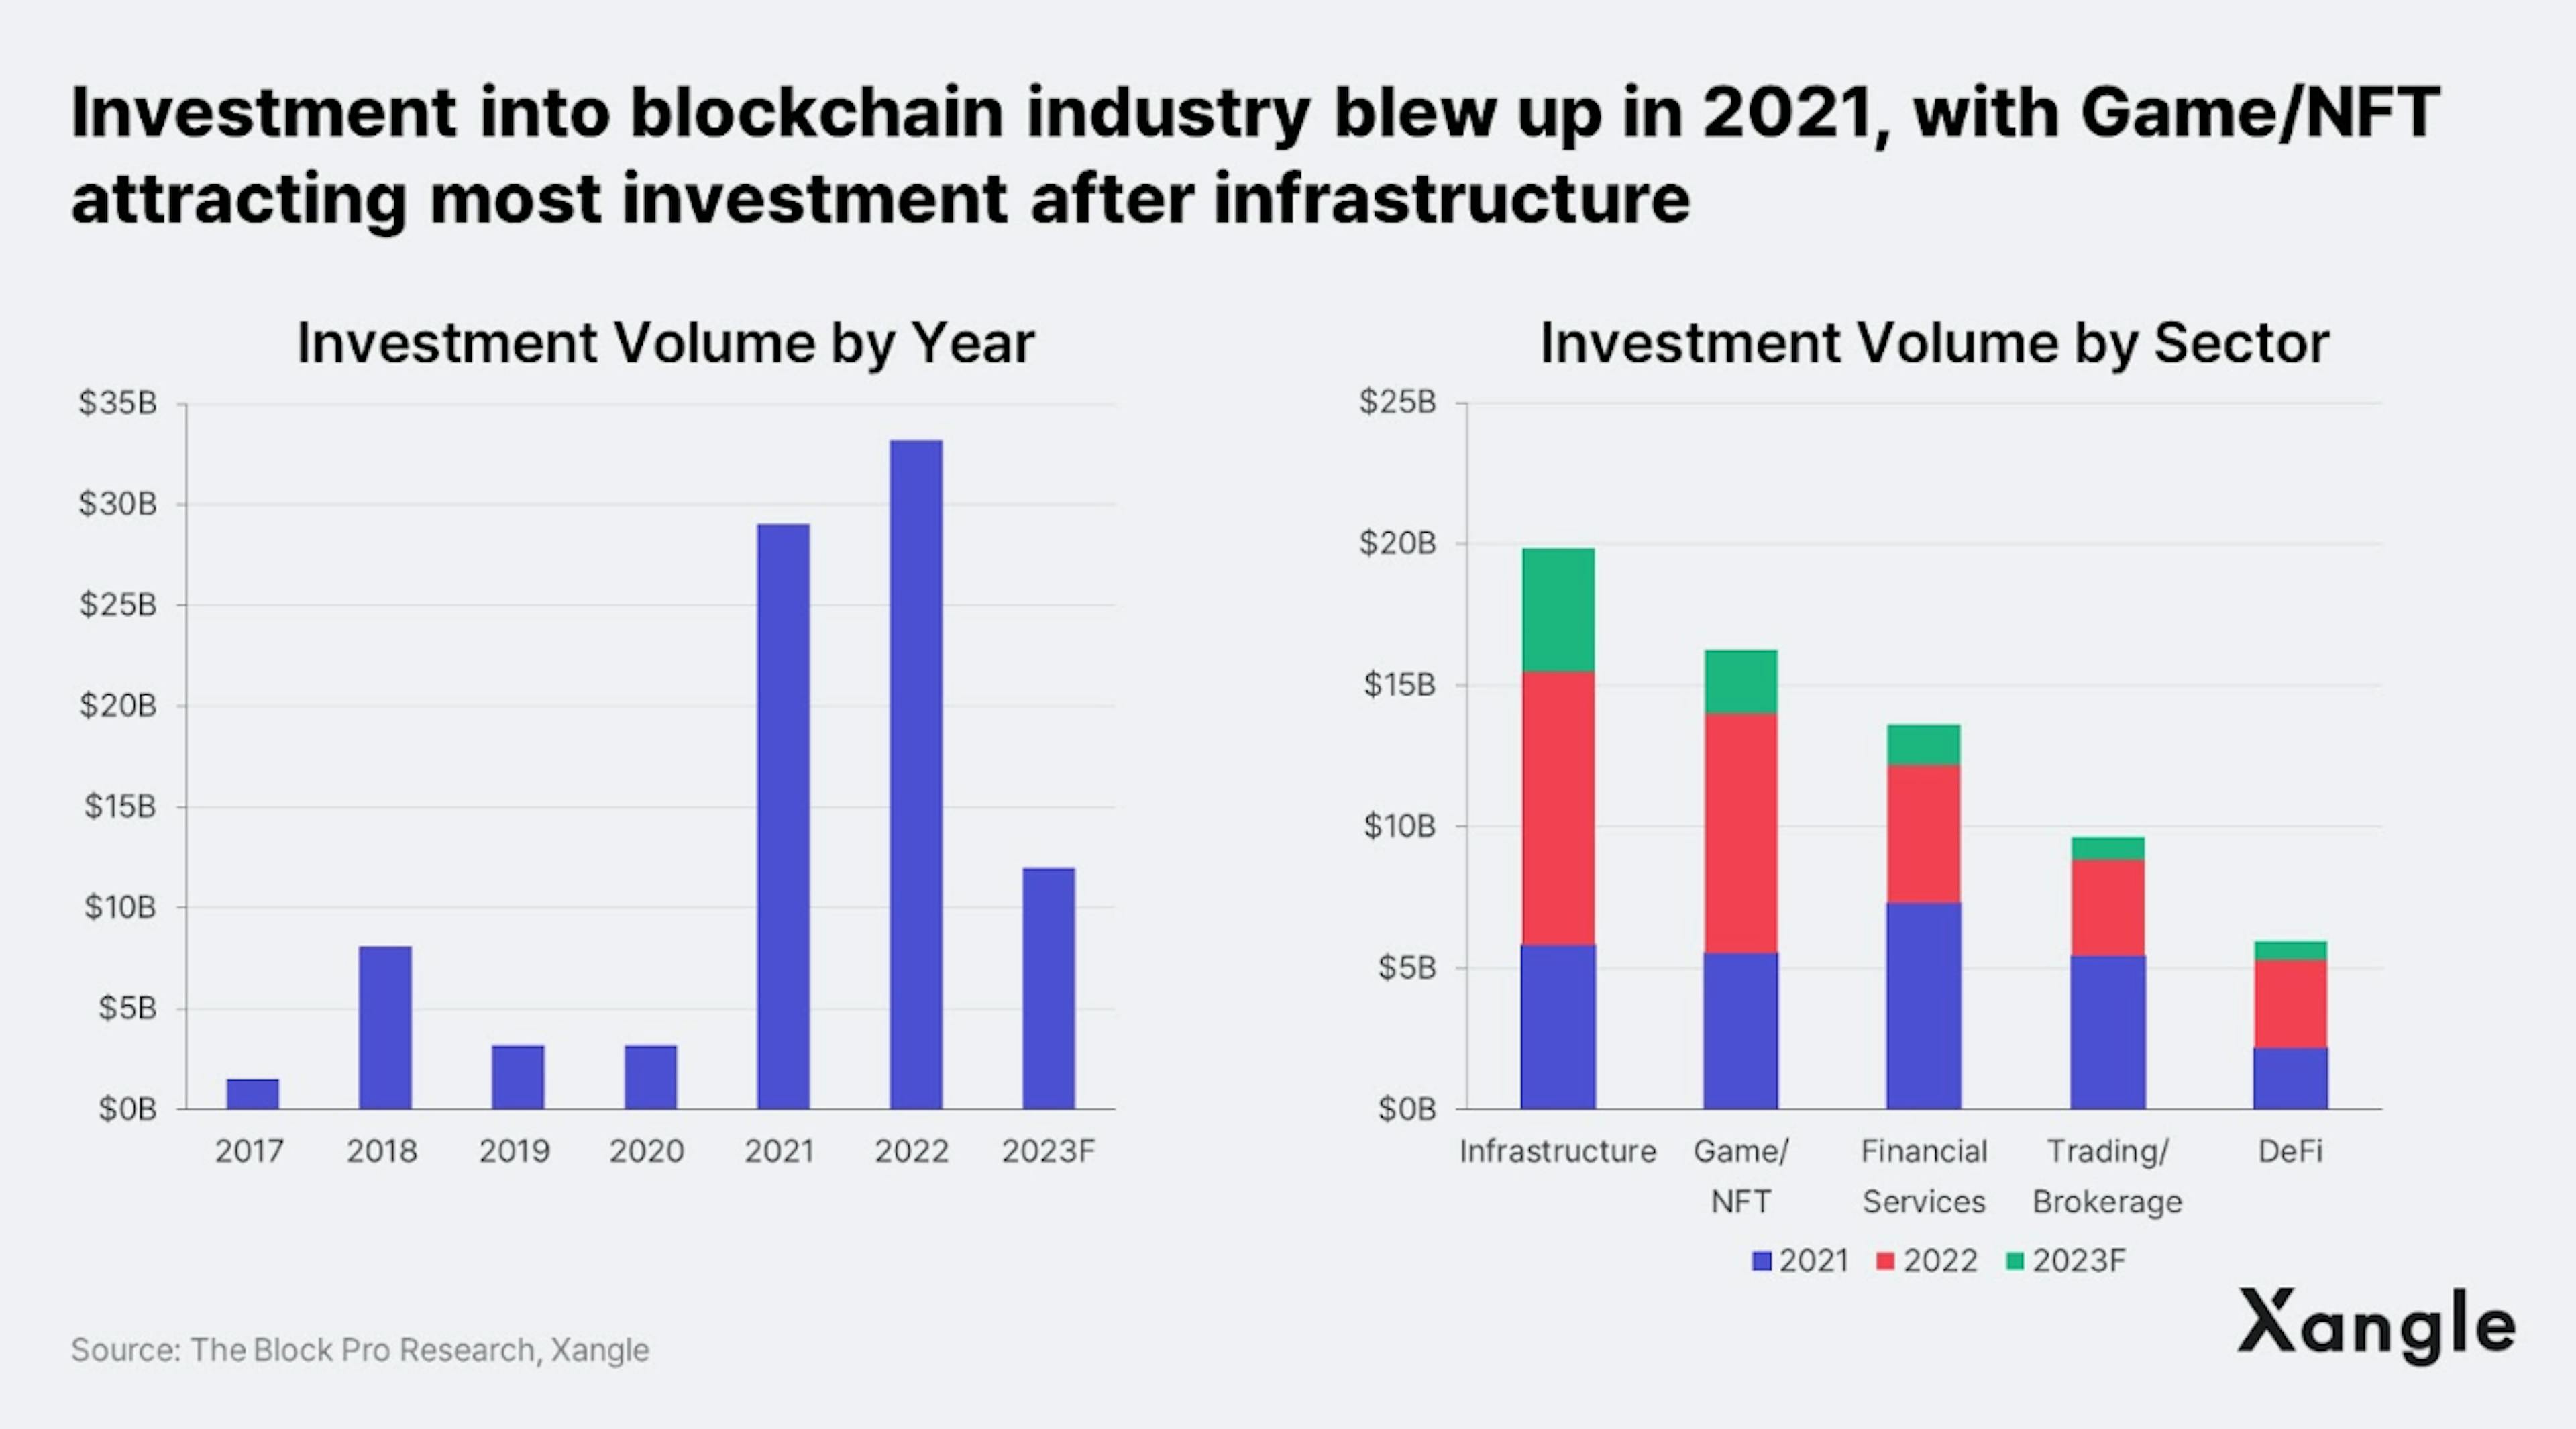 Les investissements dans l'industrie de la blockchain ont explosé en 2021, le Gaming/NFT attirant le plus d'investissements après l'infrastructure.